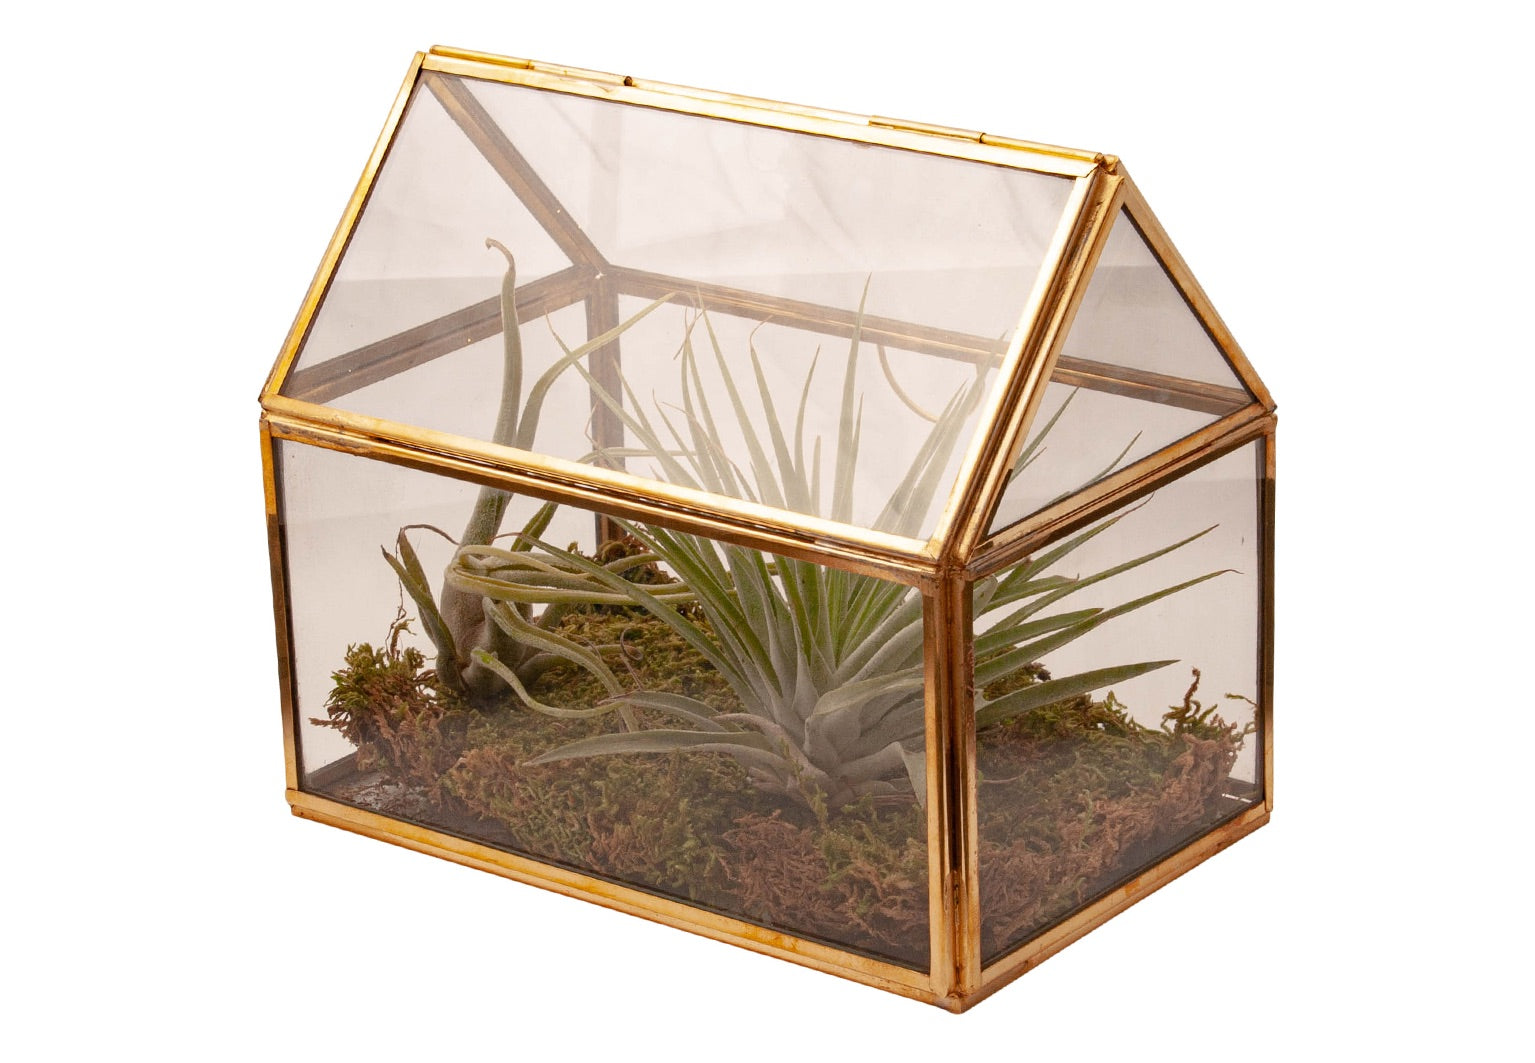 glas terrarium met 2 tillandsia plantjes en afgewerkt met plaatmos. Terrarium is van glas en opgebouwd met goudkleurig metaal